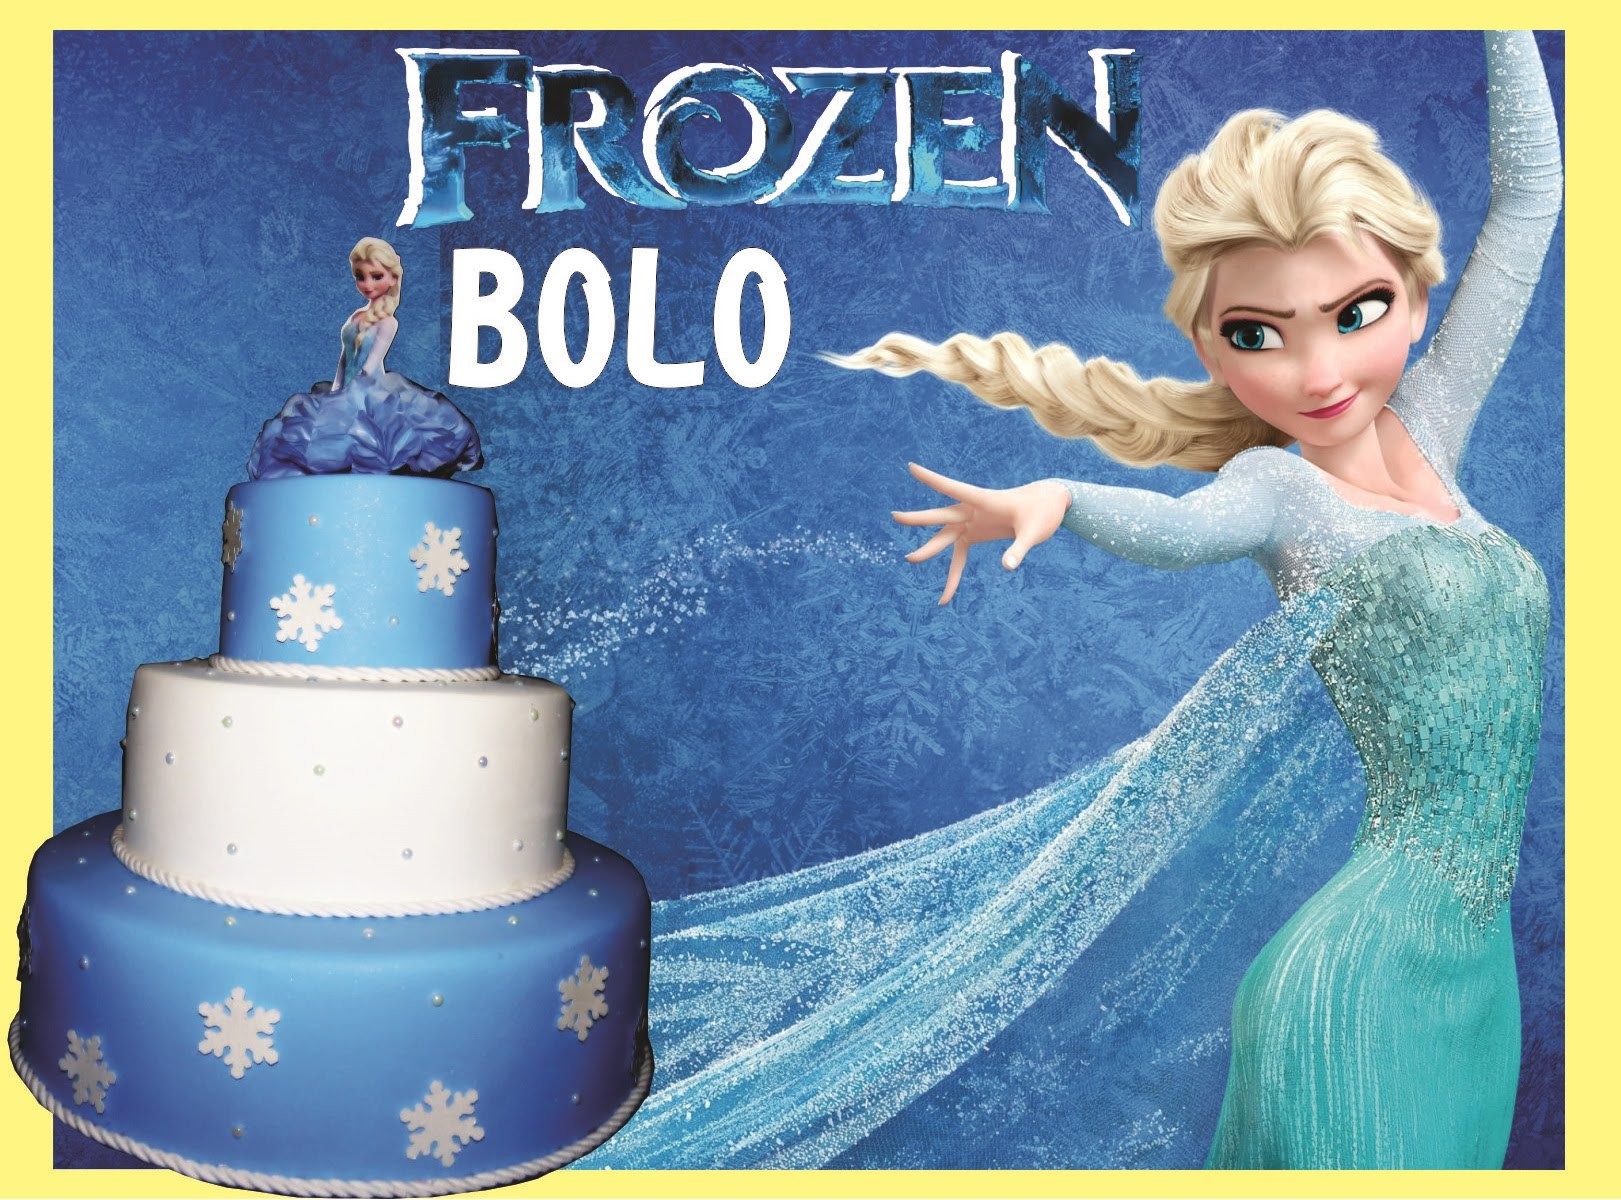 Bolo Falso "Fake" Frozen (Bolo Cenográfico) (DIY)